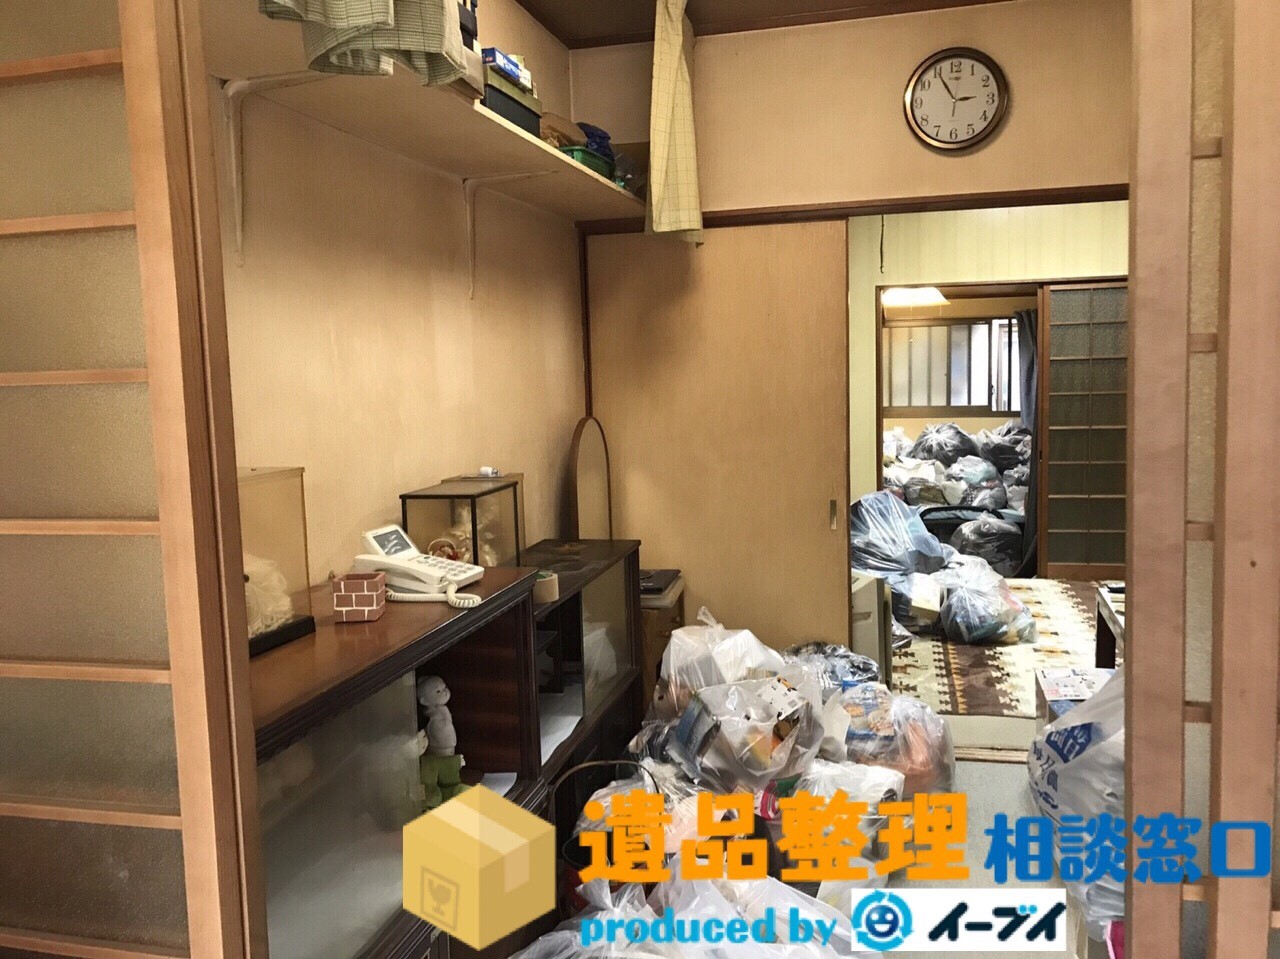 大阪府吹田市で遺品整理作業に伴い納屋の廃品や家具処分をしました。のアイキャッチ